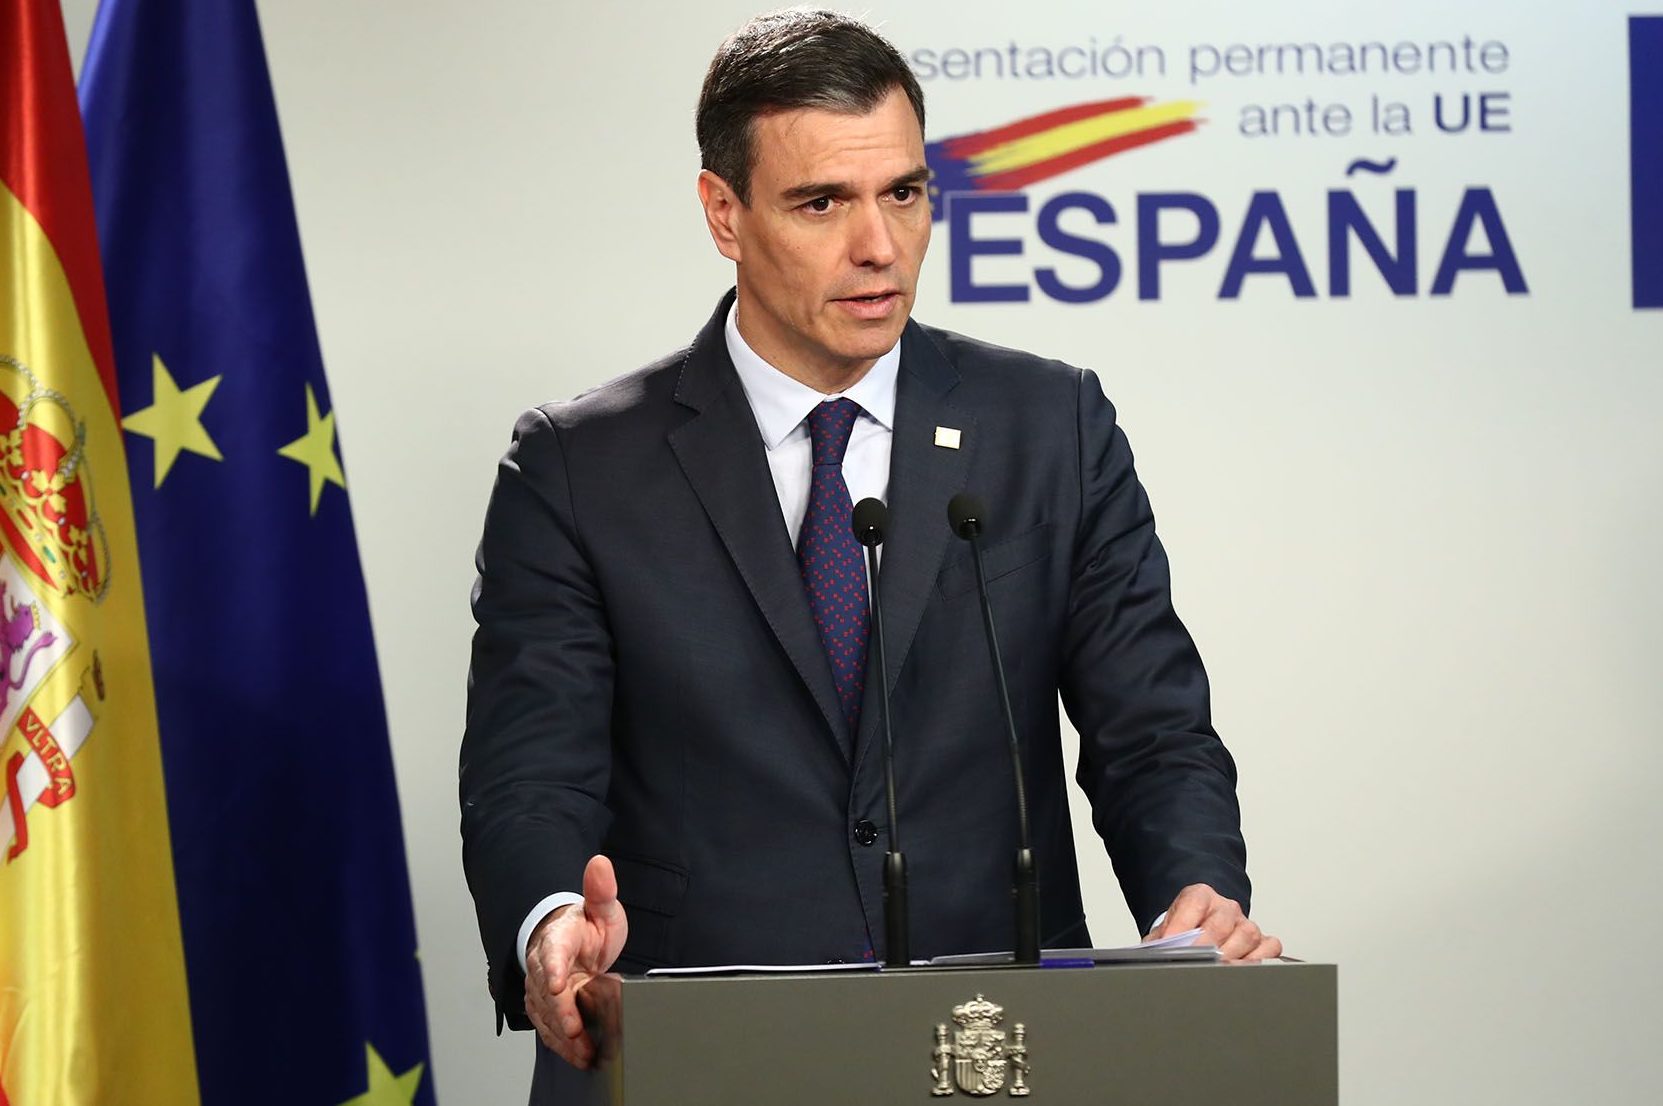 Presidente da Espanha, Pedro Sánchez